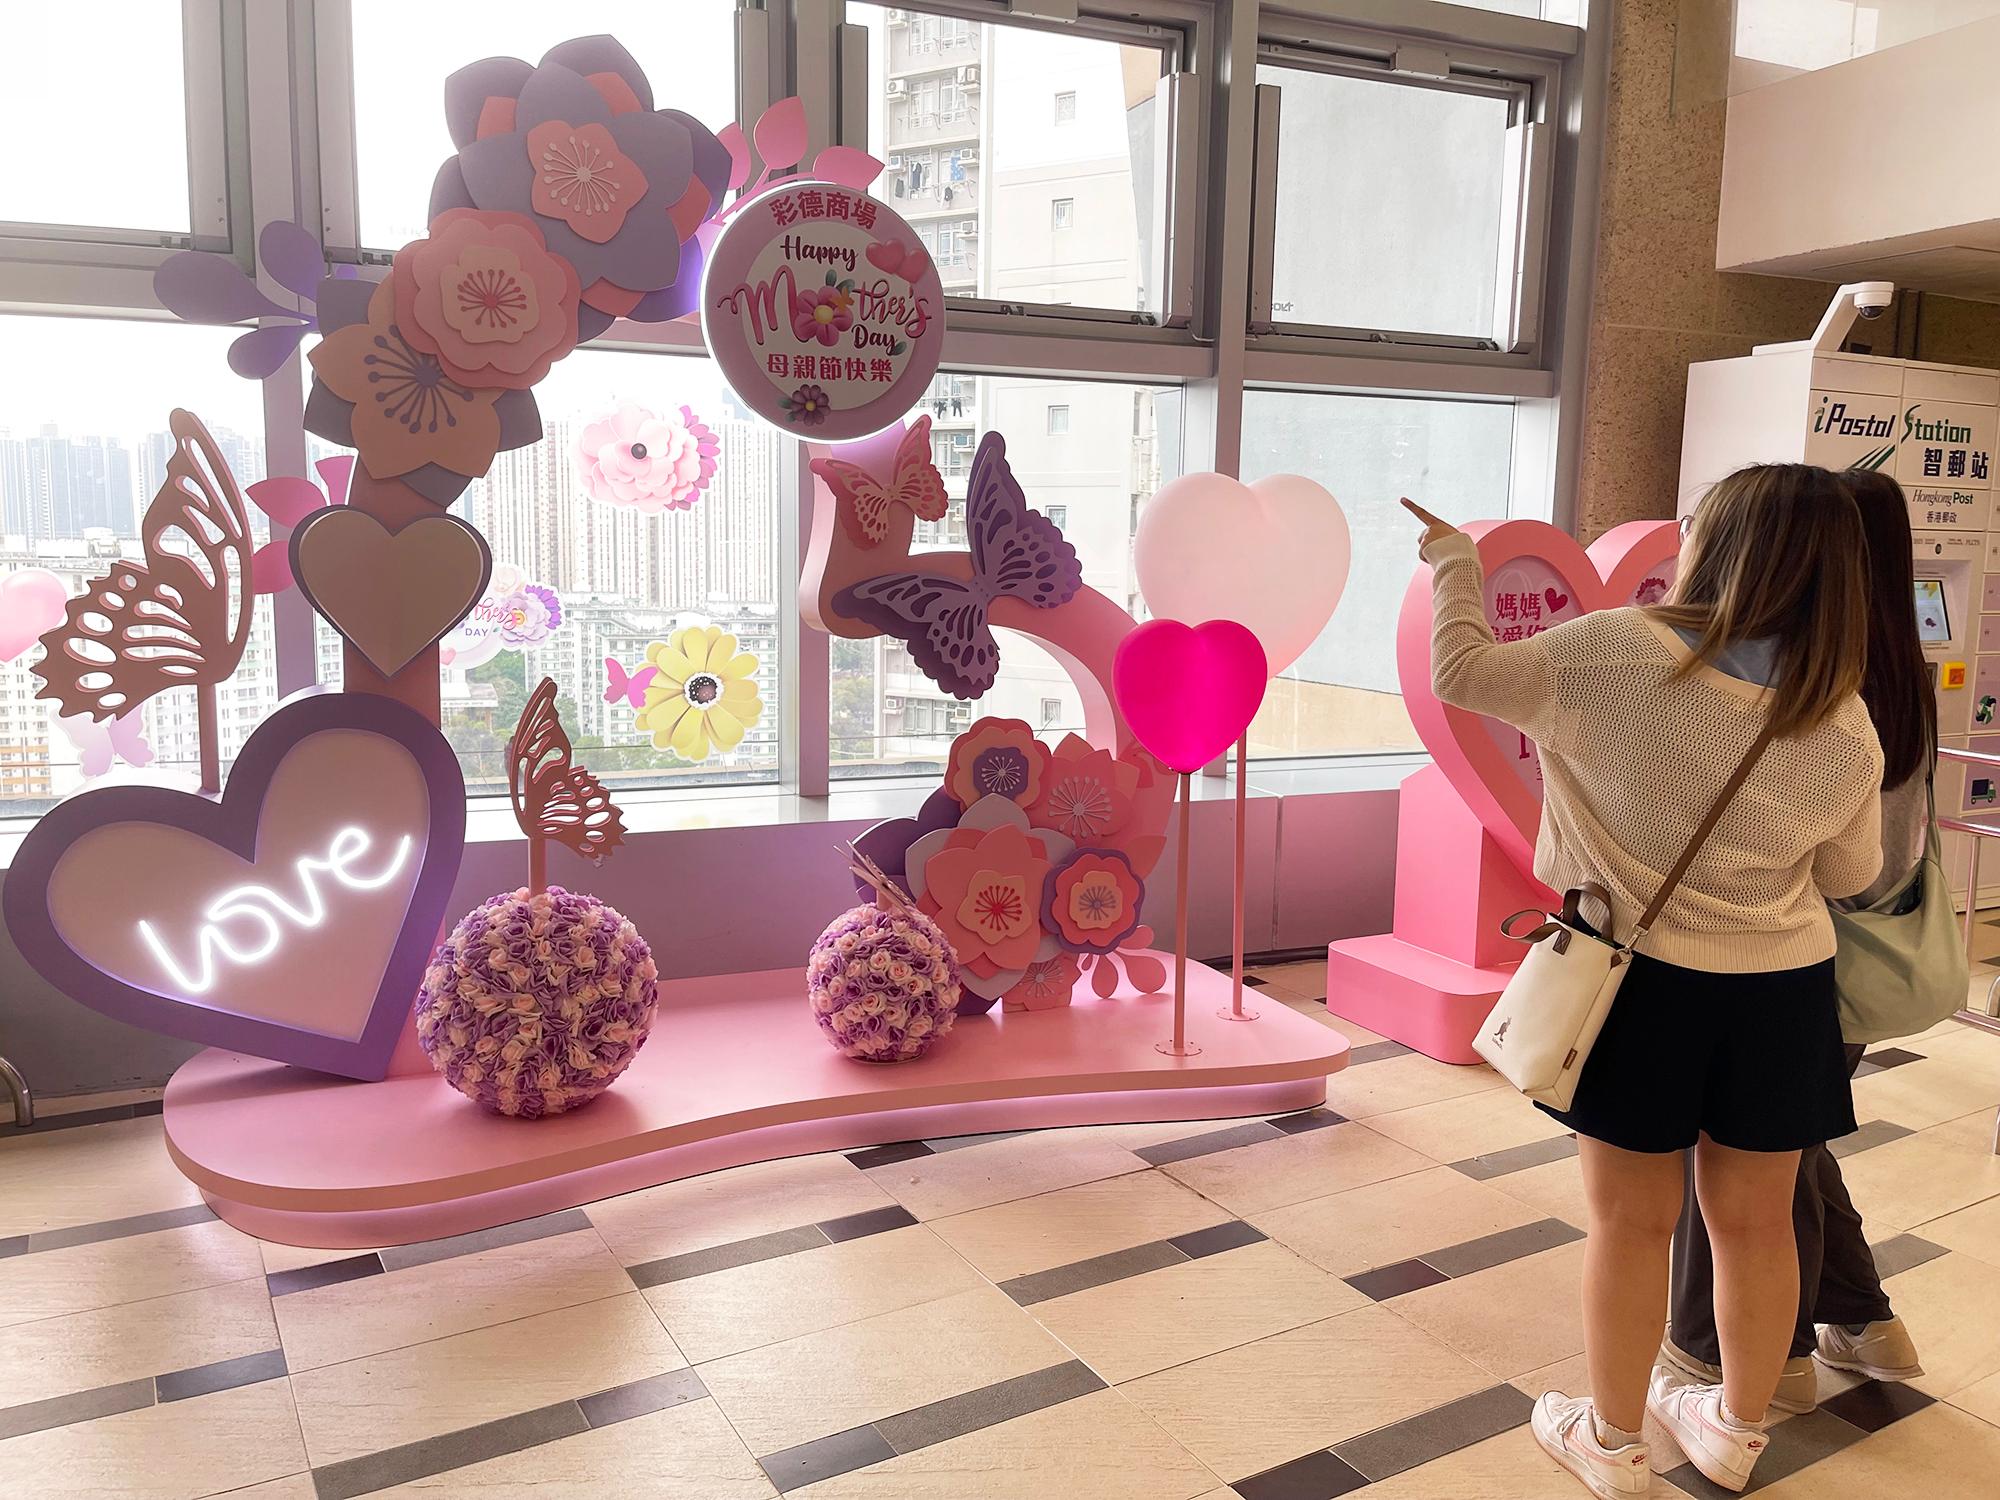 香港房屋委员会（房委会）于母亲节期间在辖下多个商场举办推广活动，以歌颂母爱和增加商场人流。图示房委会观塘彩德商场的母亲节摆设。